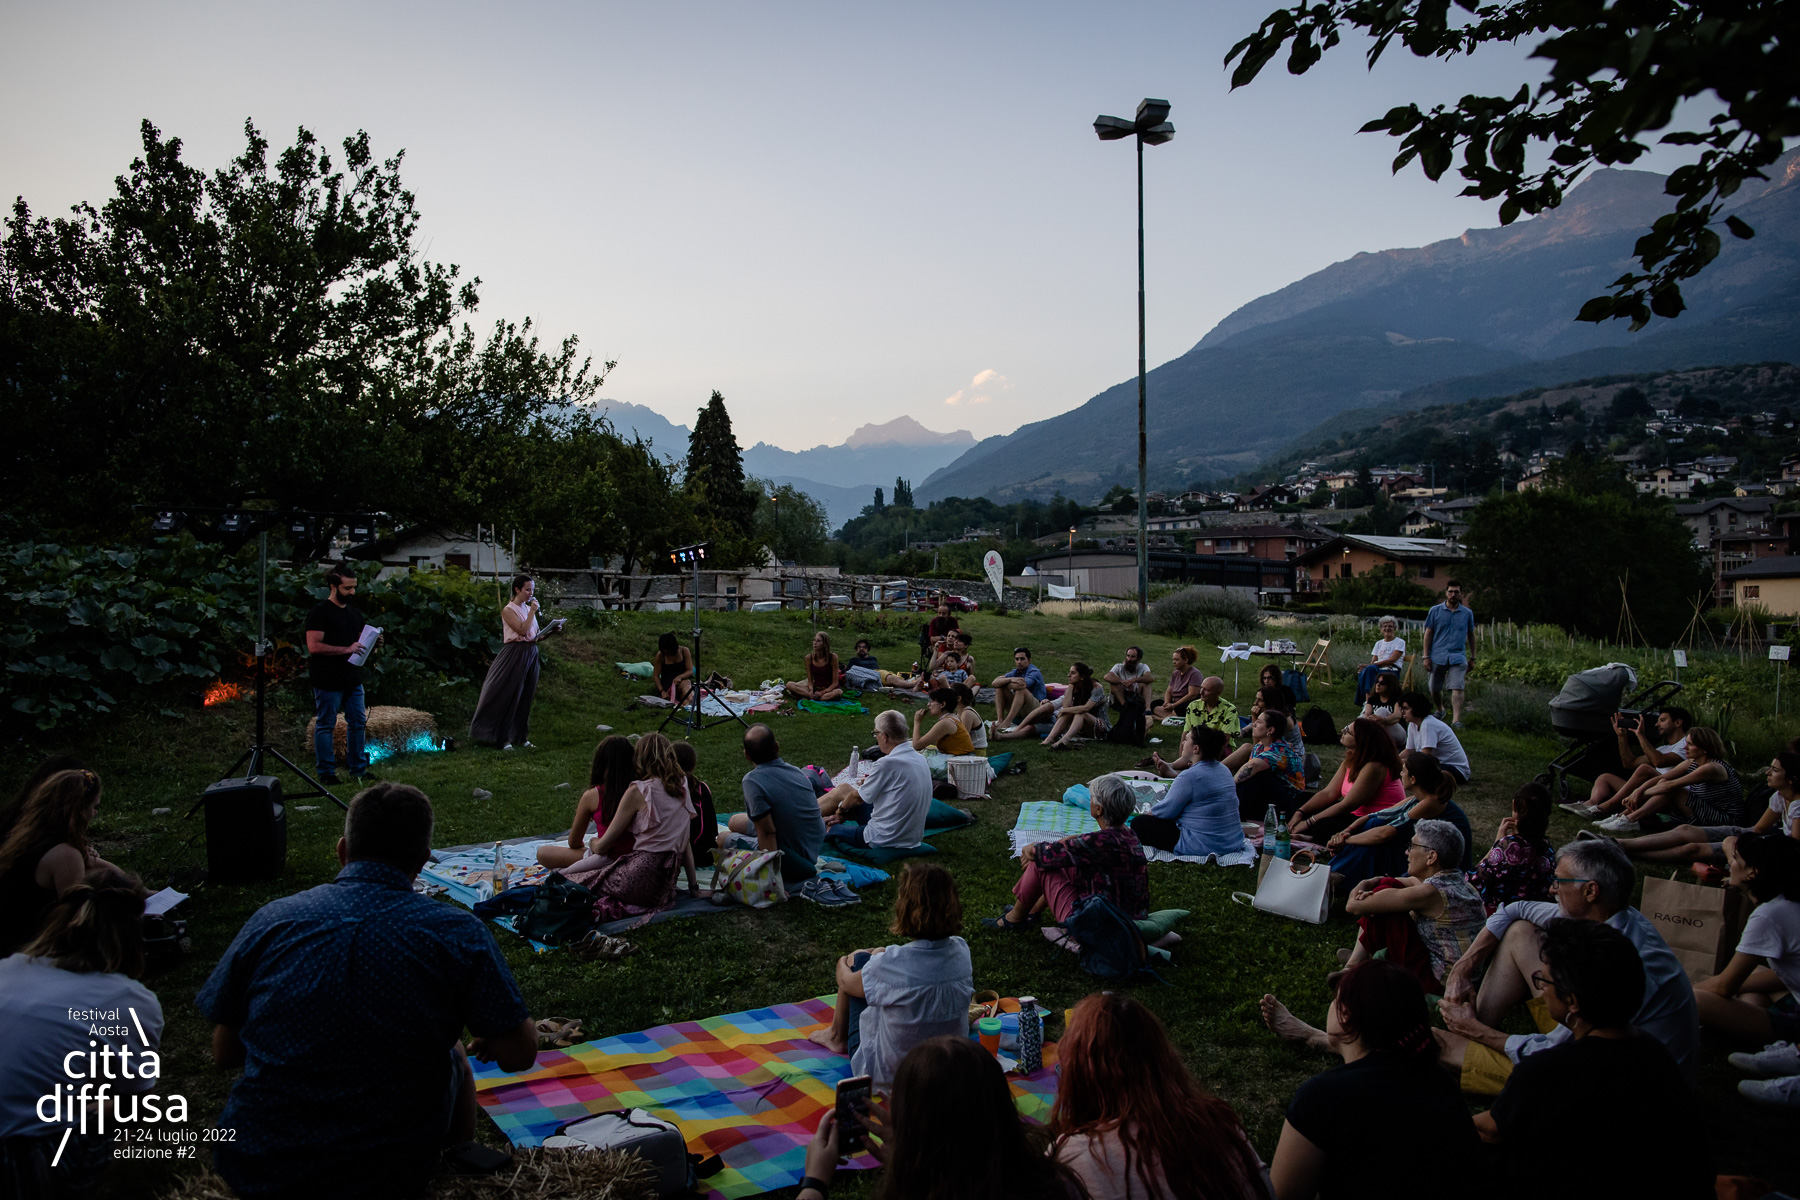 ph: Giorgio Prodoti - Festival Aosta Città Diffusa